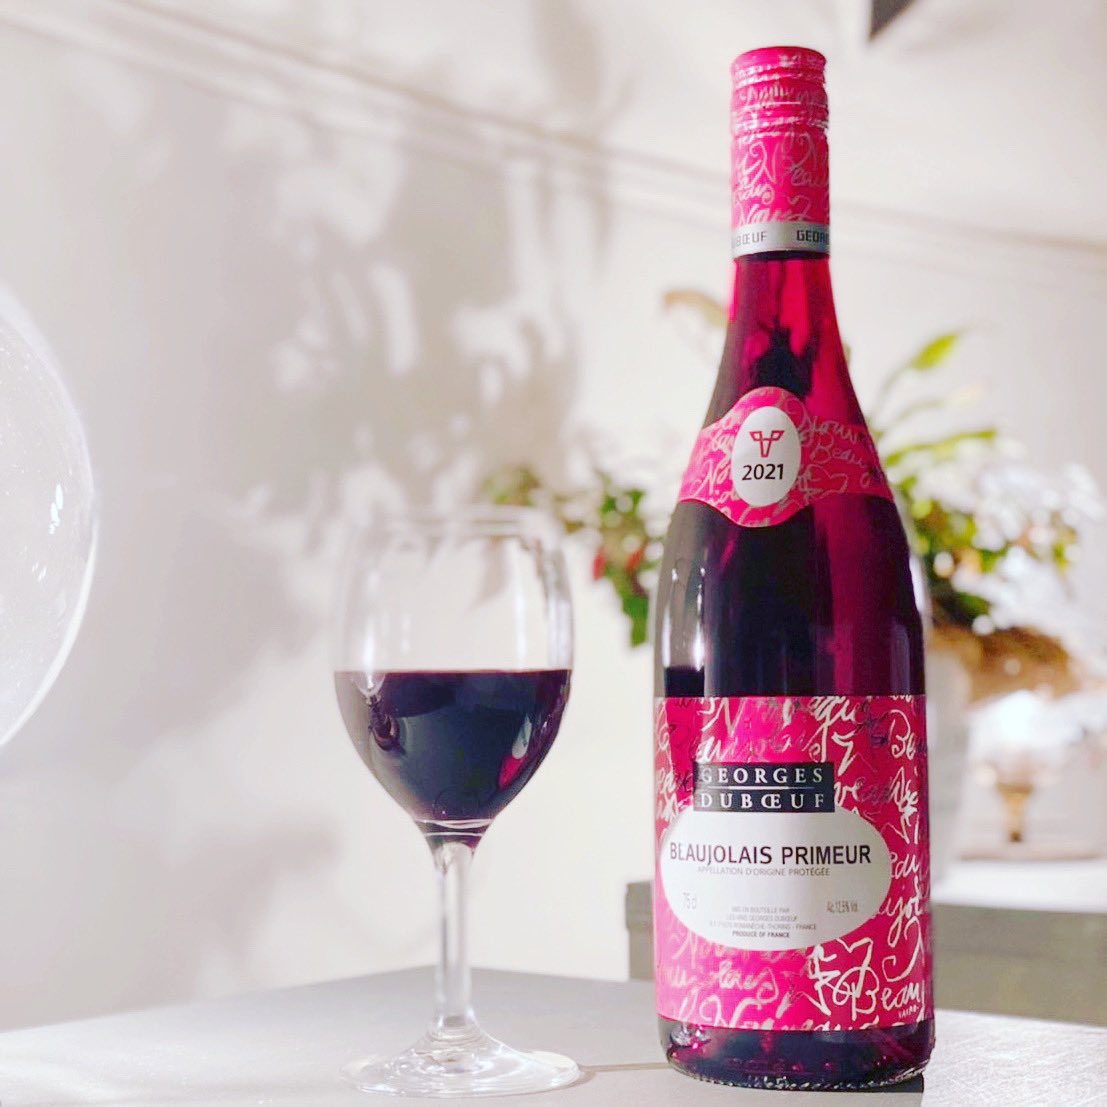 #beaujolaisnouveau #georgesduboeuf #beaujolais2021 #released #wine #drinkmenu #iseshima #mie #japan #bbqlover #beachgram instagram.com/p/CWZum06B2on/